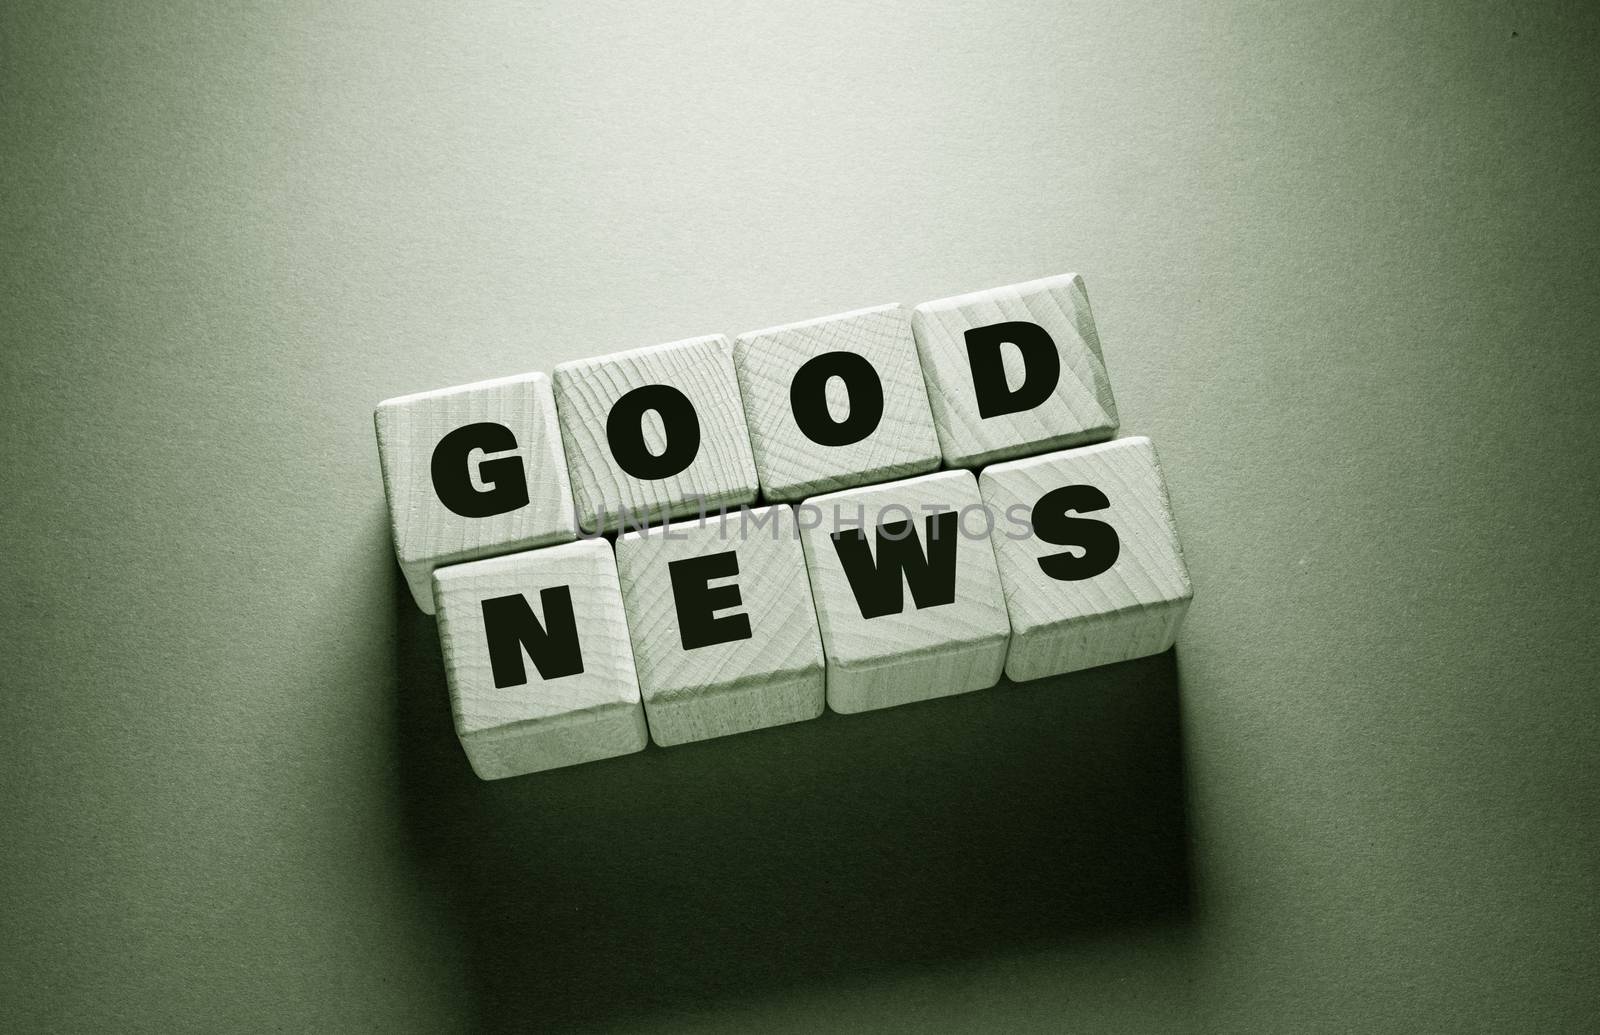 Good News Word Written on Wooden Cubes